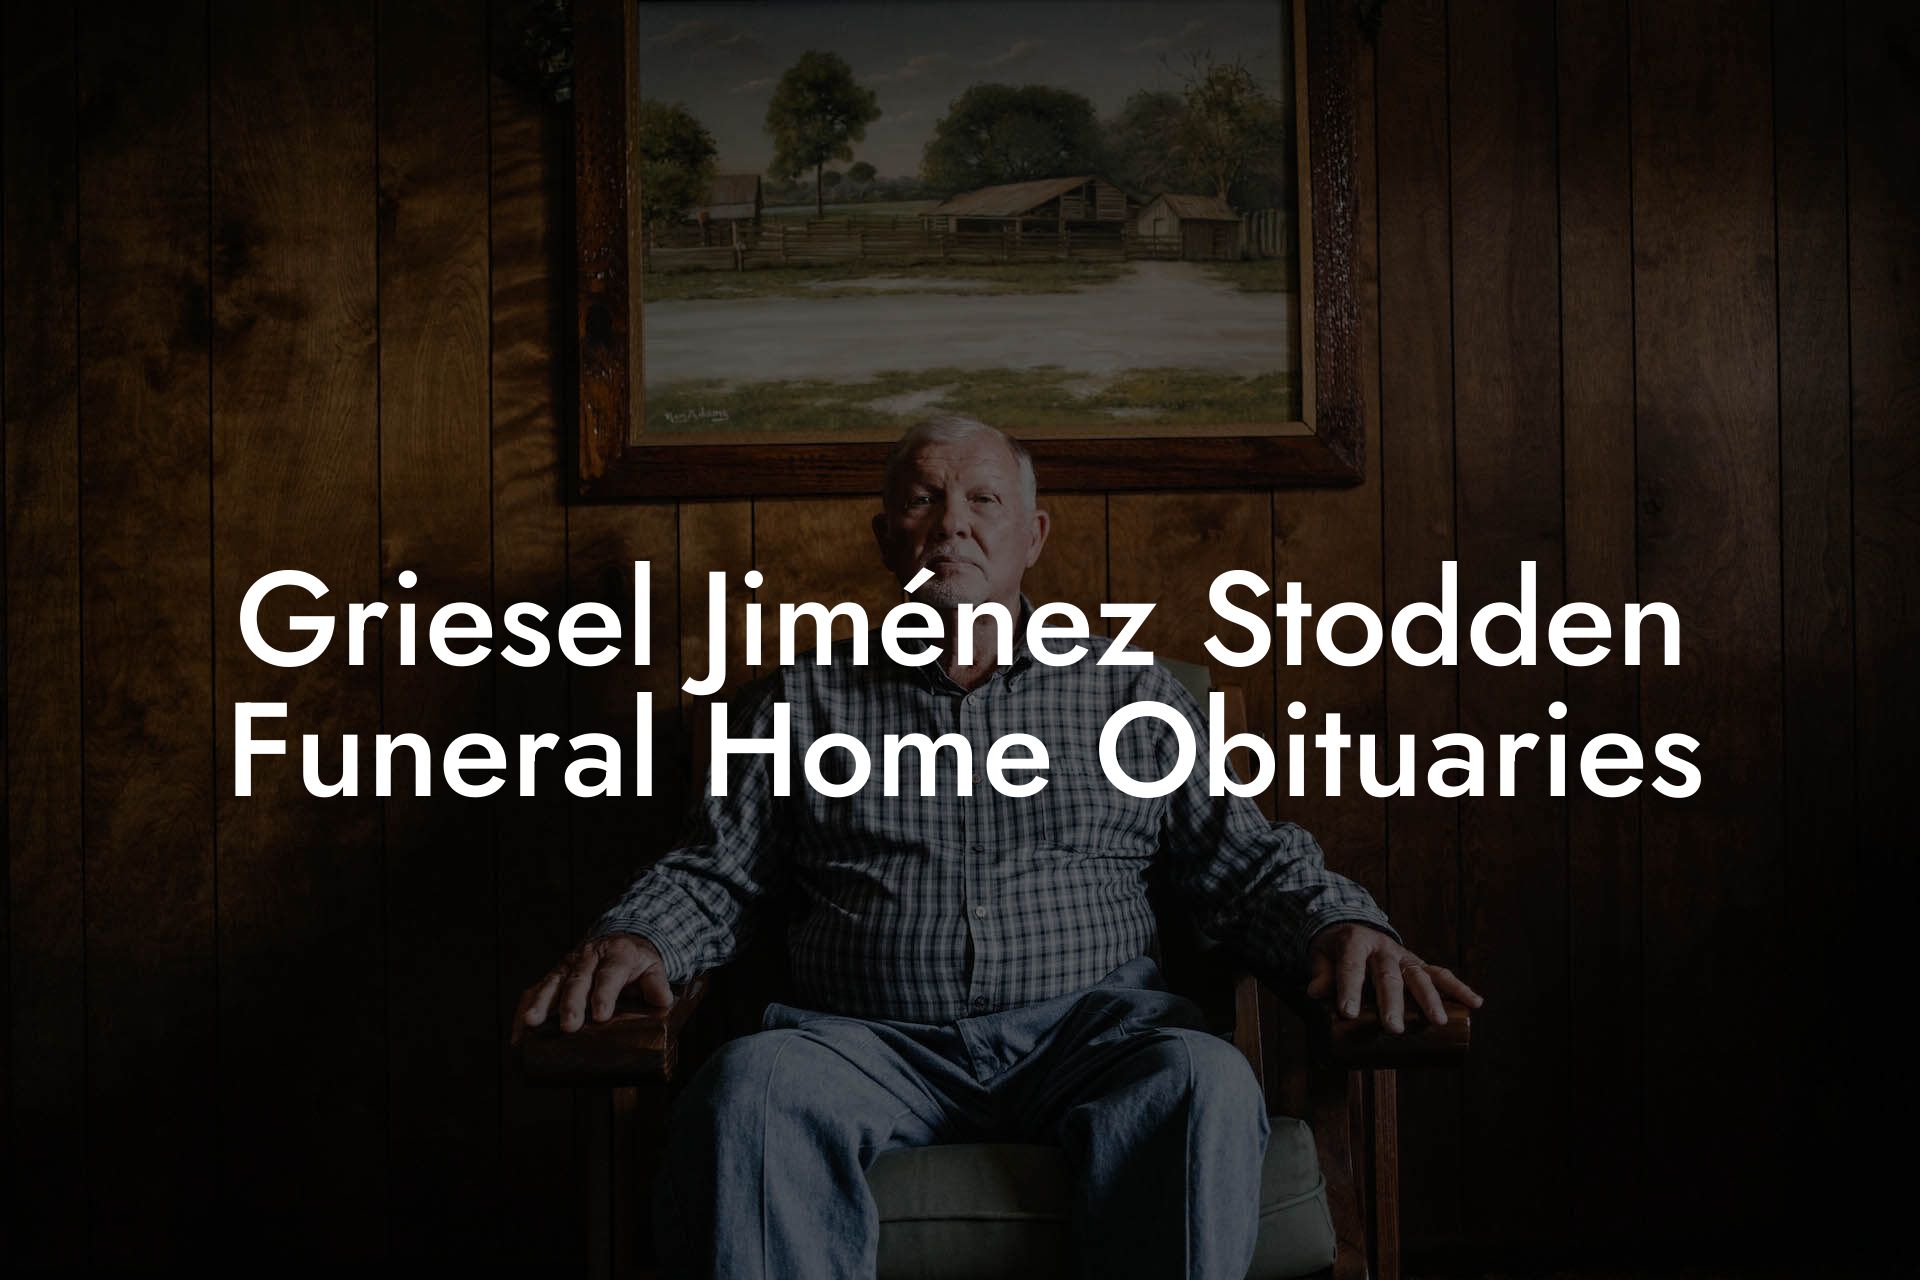 Griesel Jiménez Stodden Funeral Home Obituaries